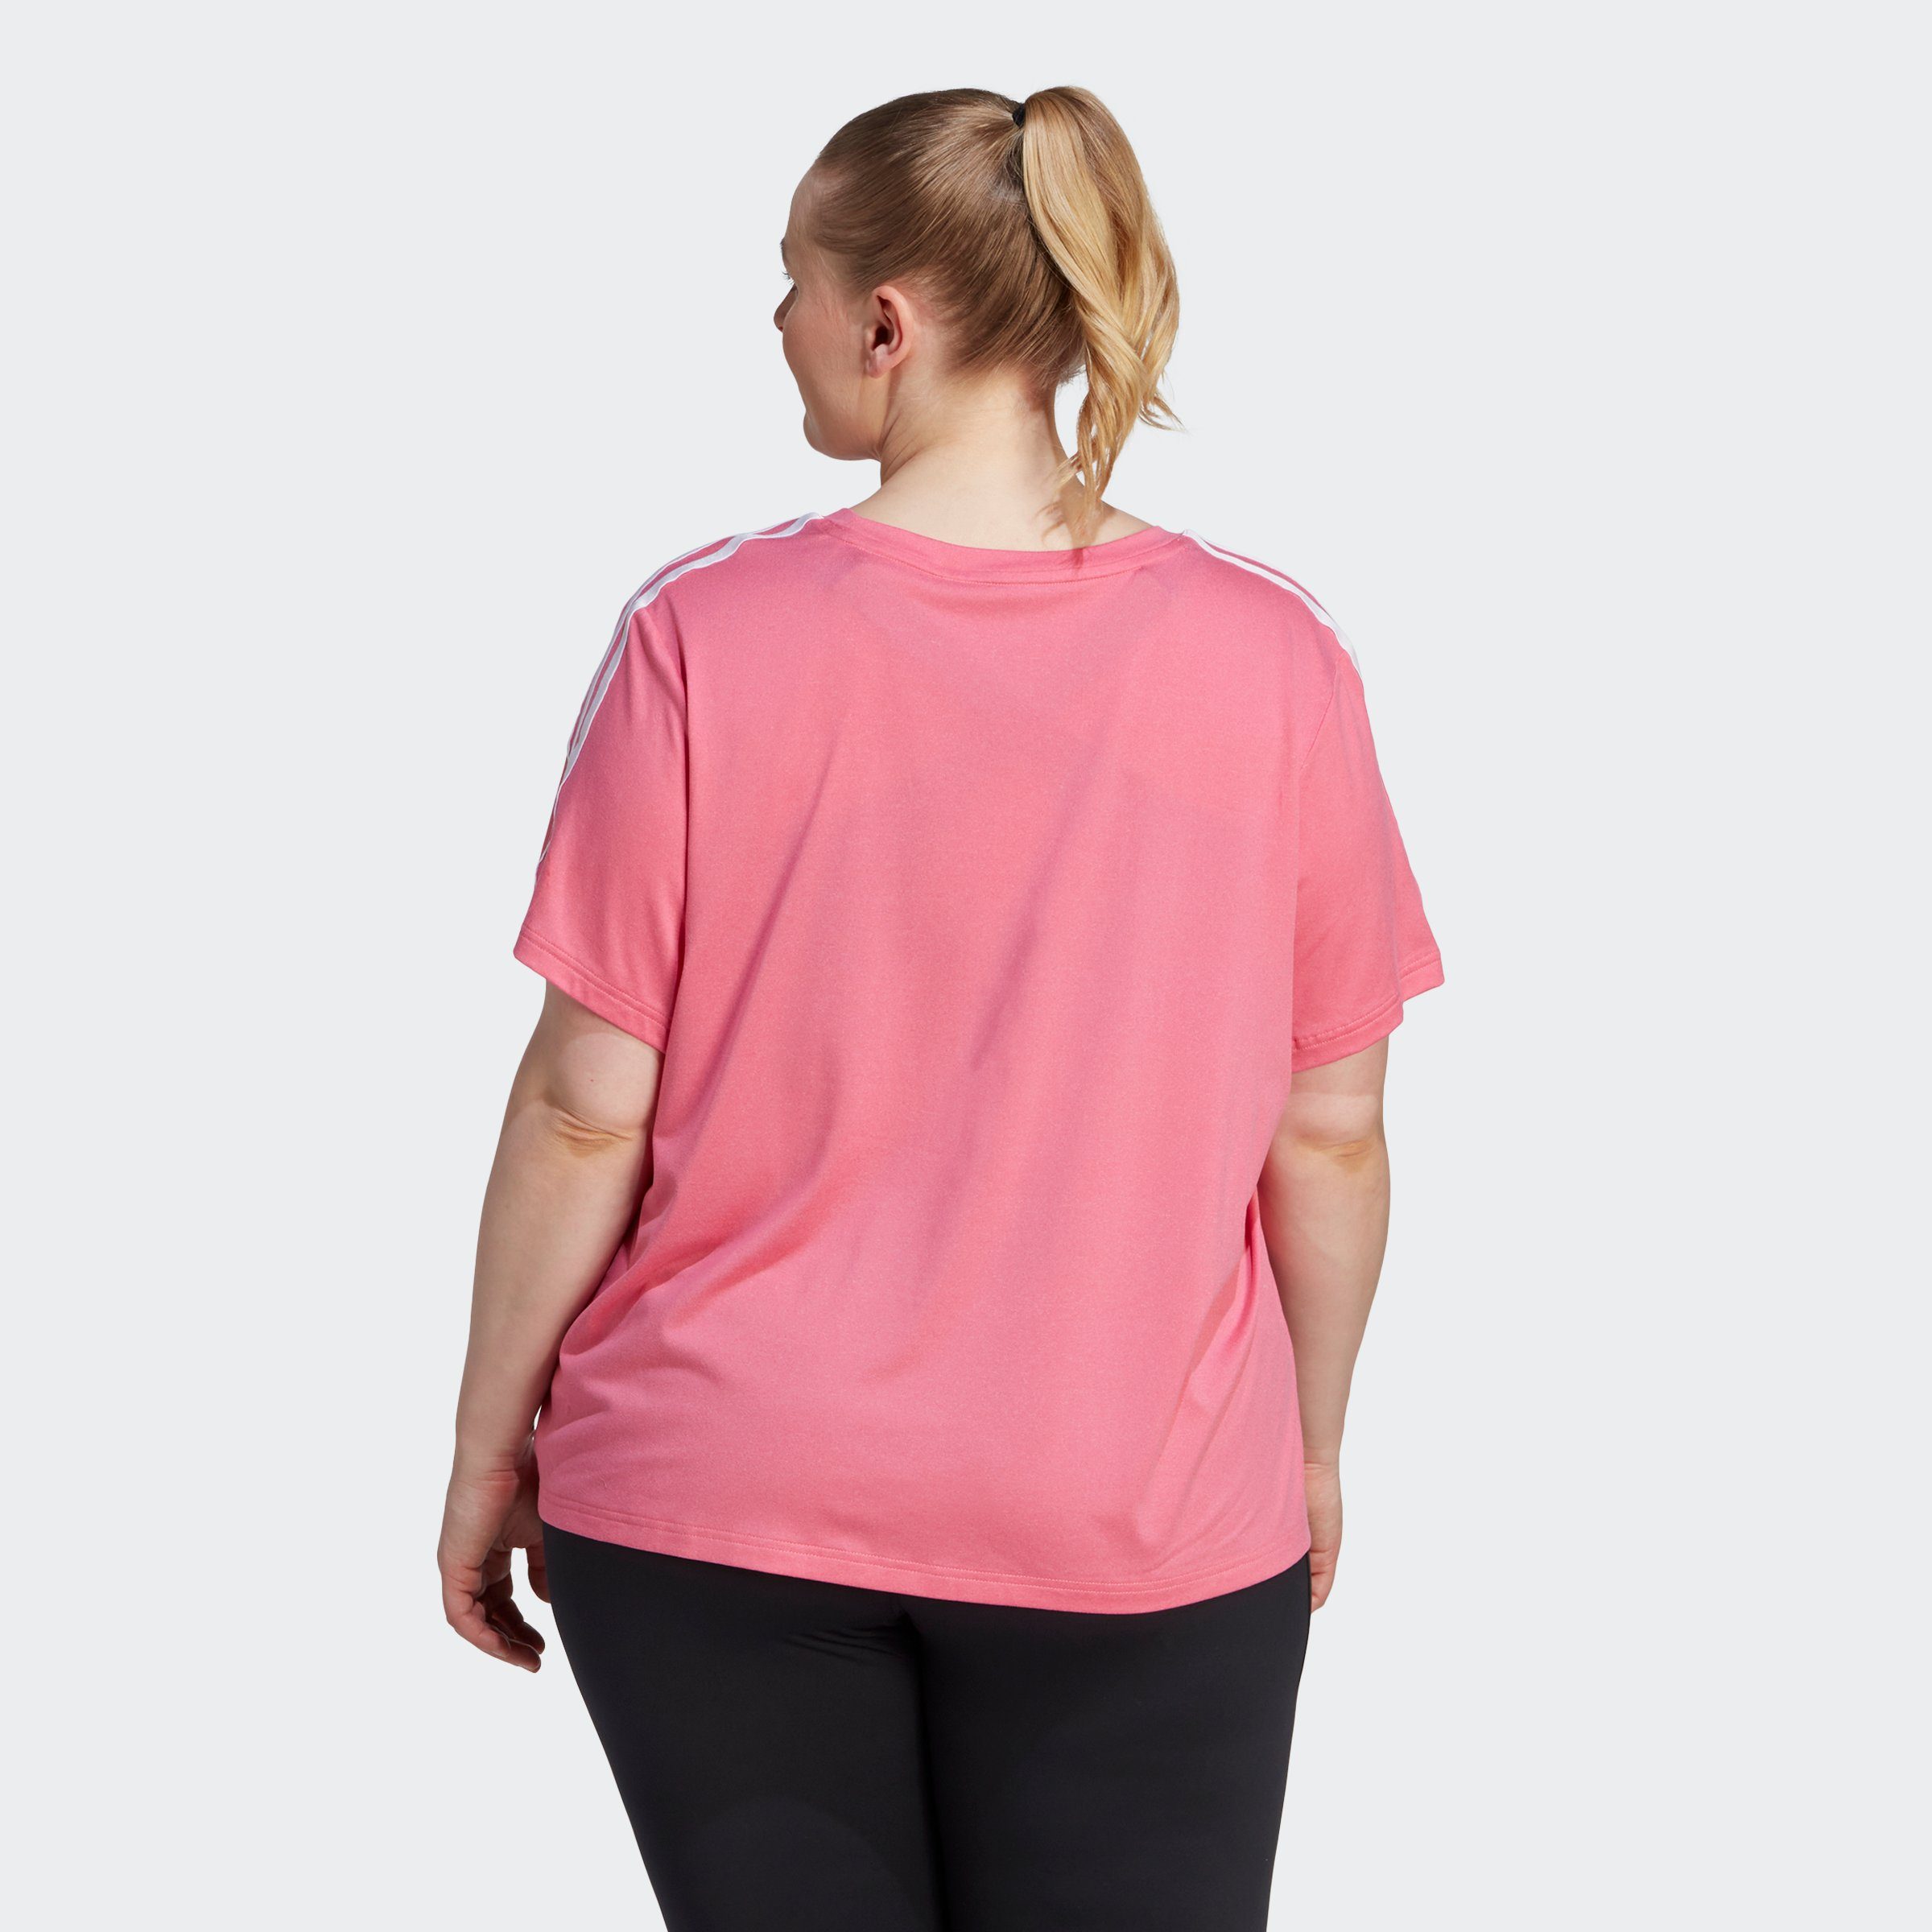 ESSENTIALS – T-Shirt adidas Performance Fusion Pink GROSSE GRÖSSEN 3-STREIFEN TRAIN White AEROREADY /